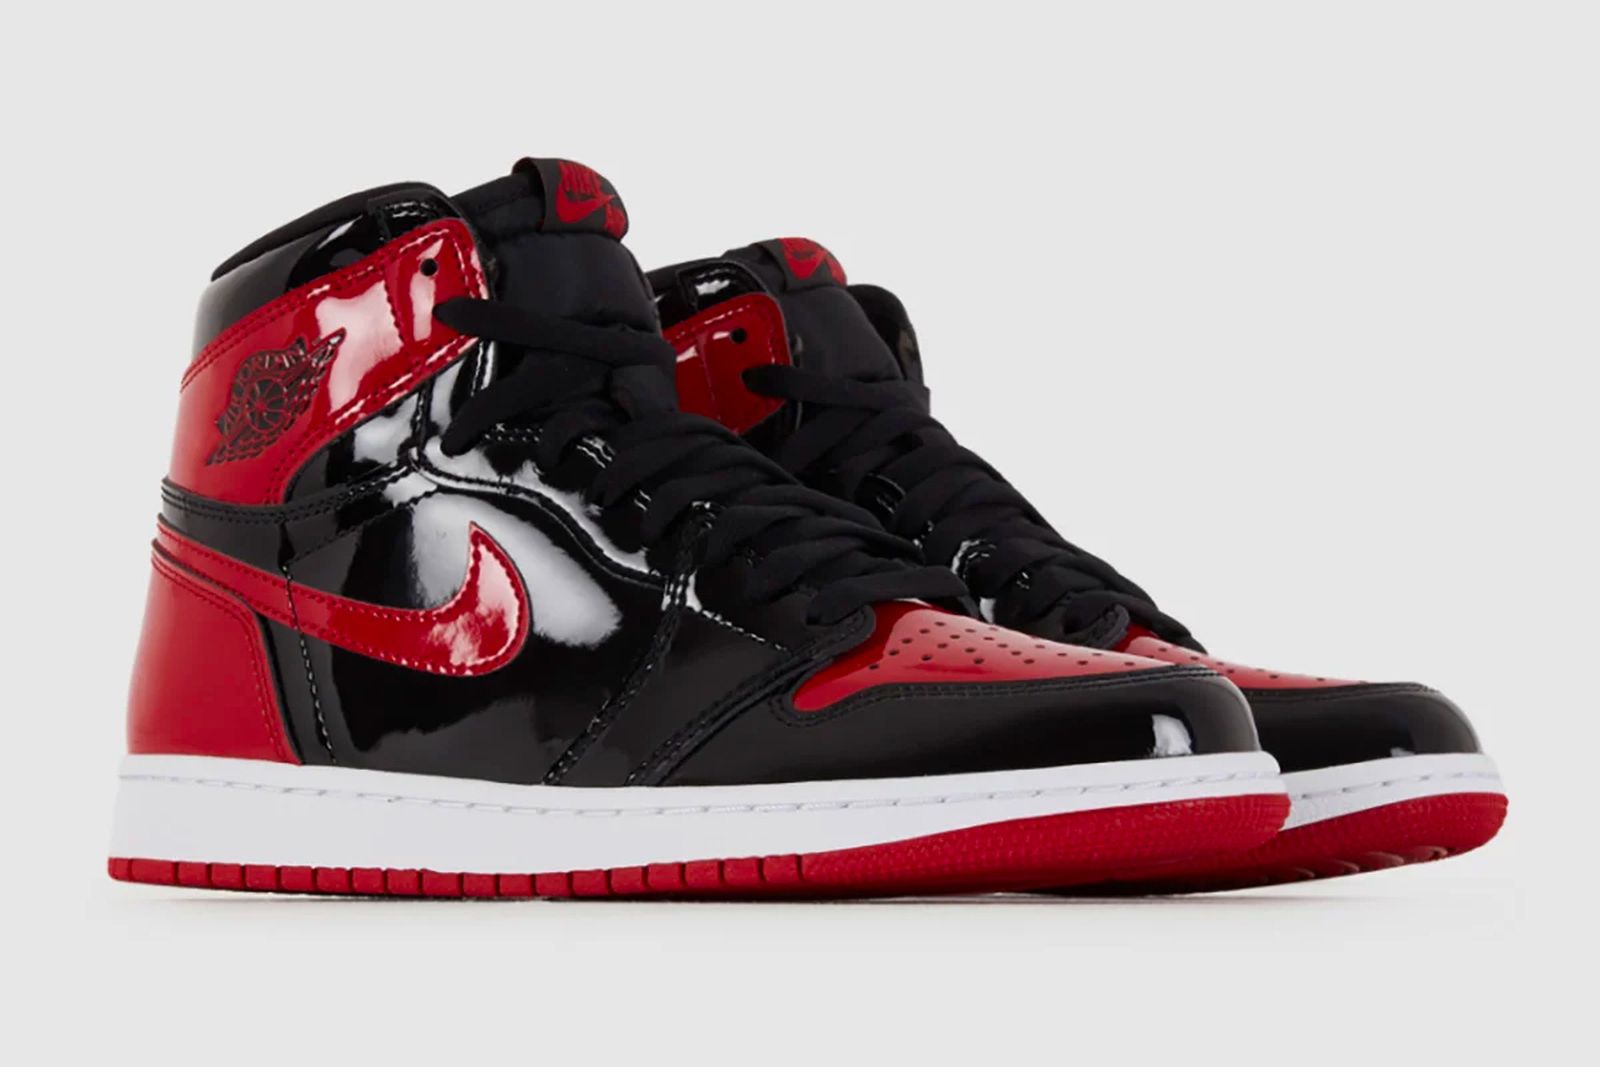 Nike Air Jordan 1 High OG Bred" Release Date, Info, Price